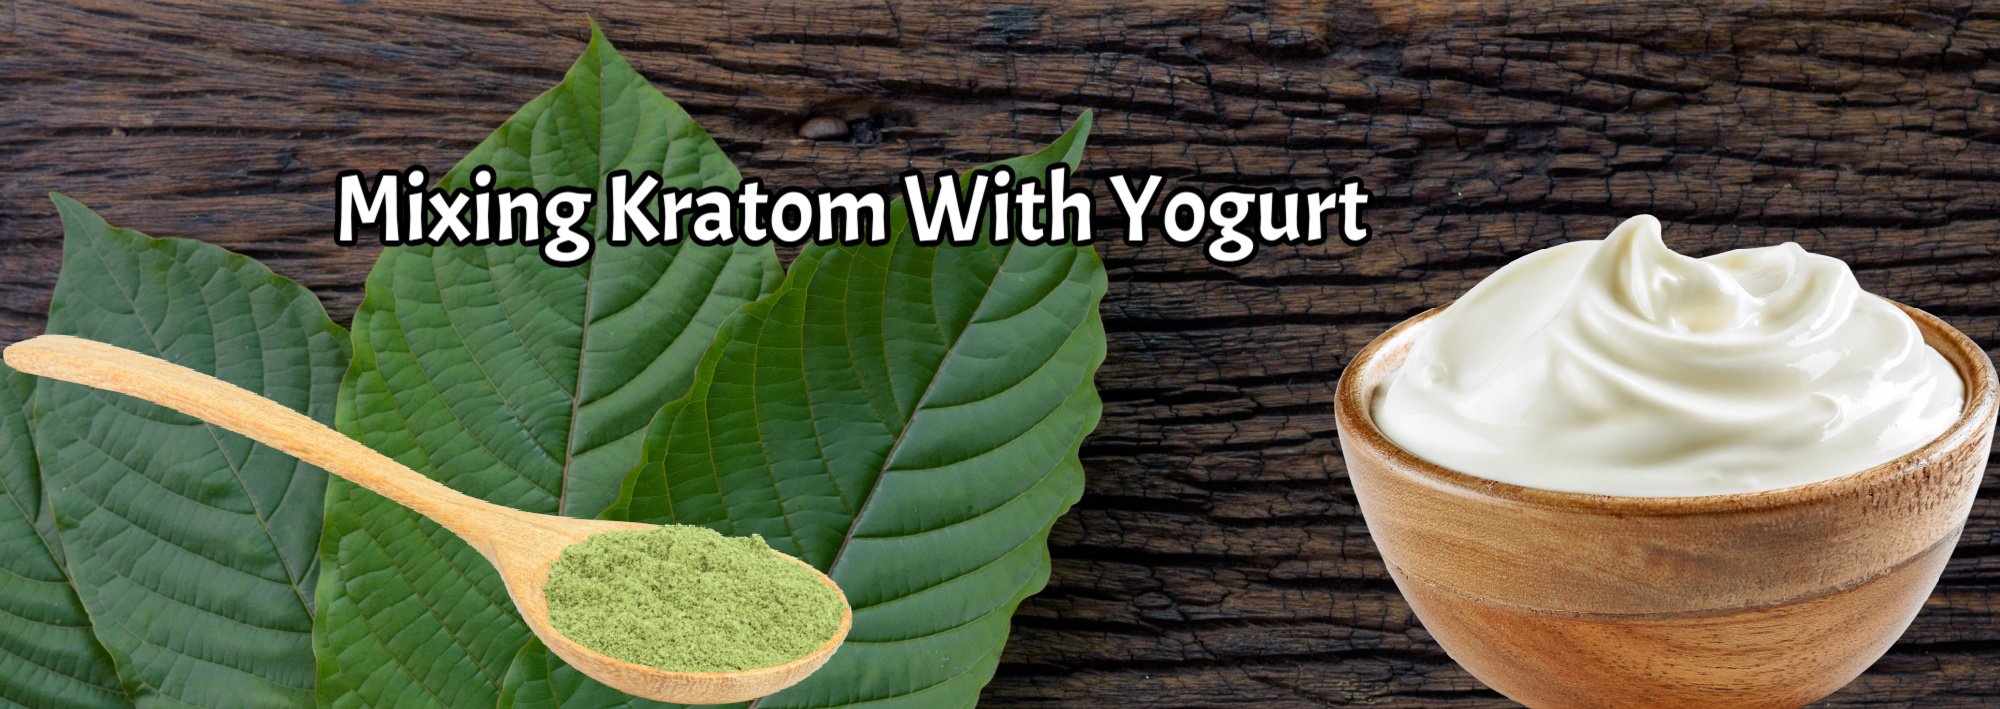 image of mixing kratom with yogurt